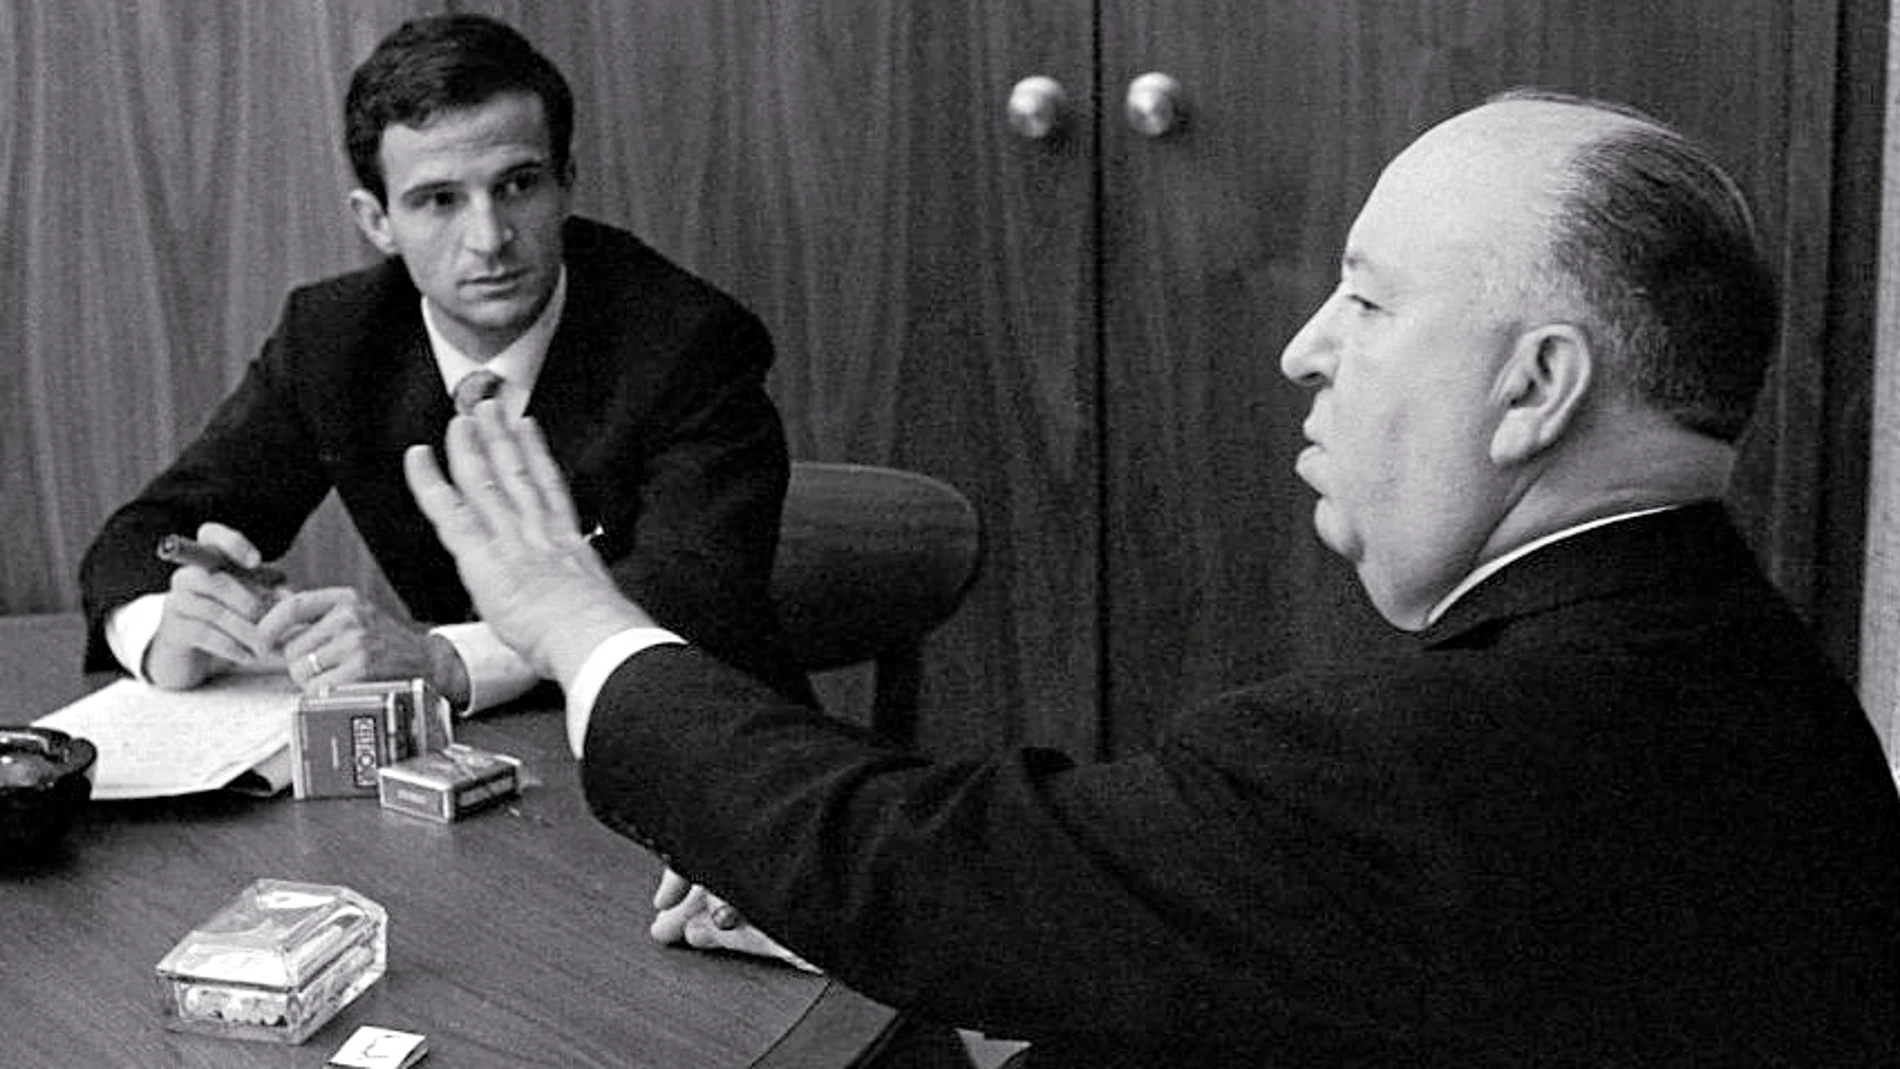 Tras la entrevista Truffaut le propuso a Hithcock que dirigiera la sesión de fotos de la que resultó esta imagen